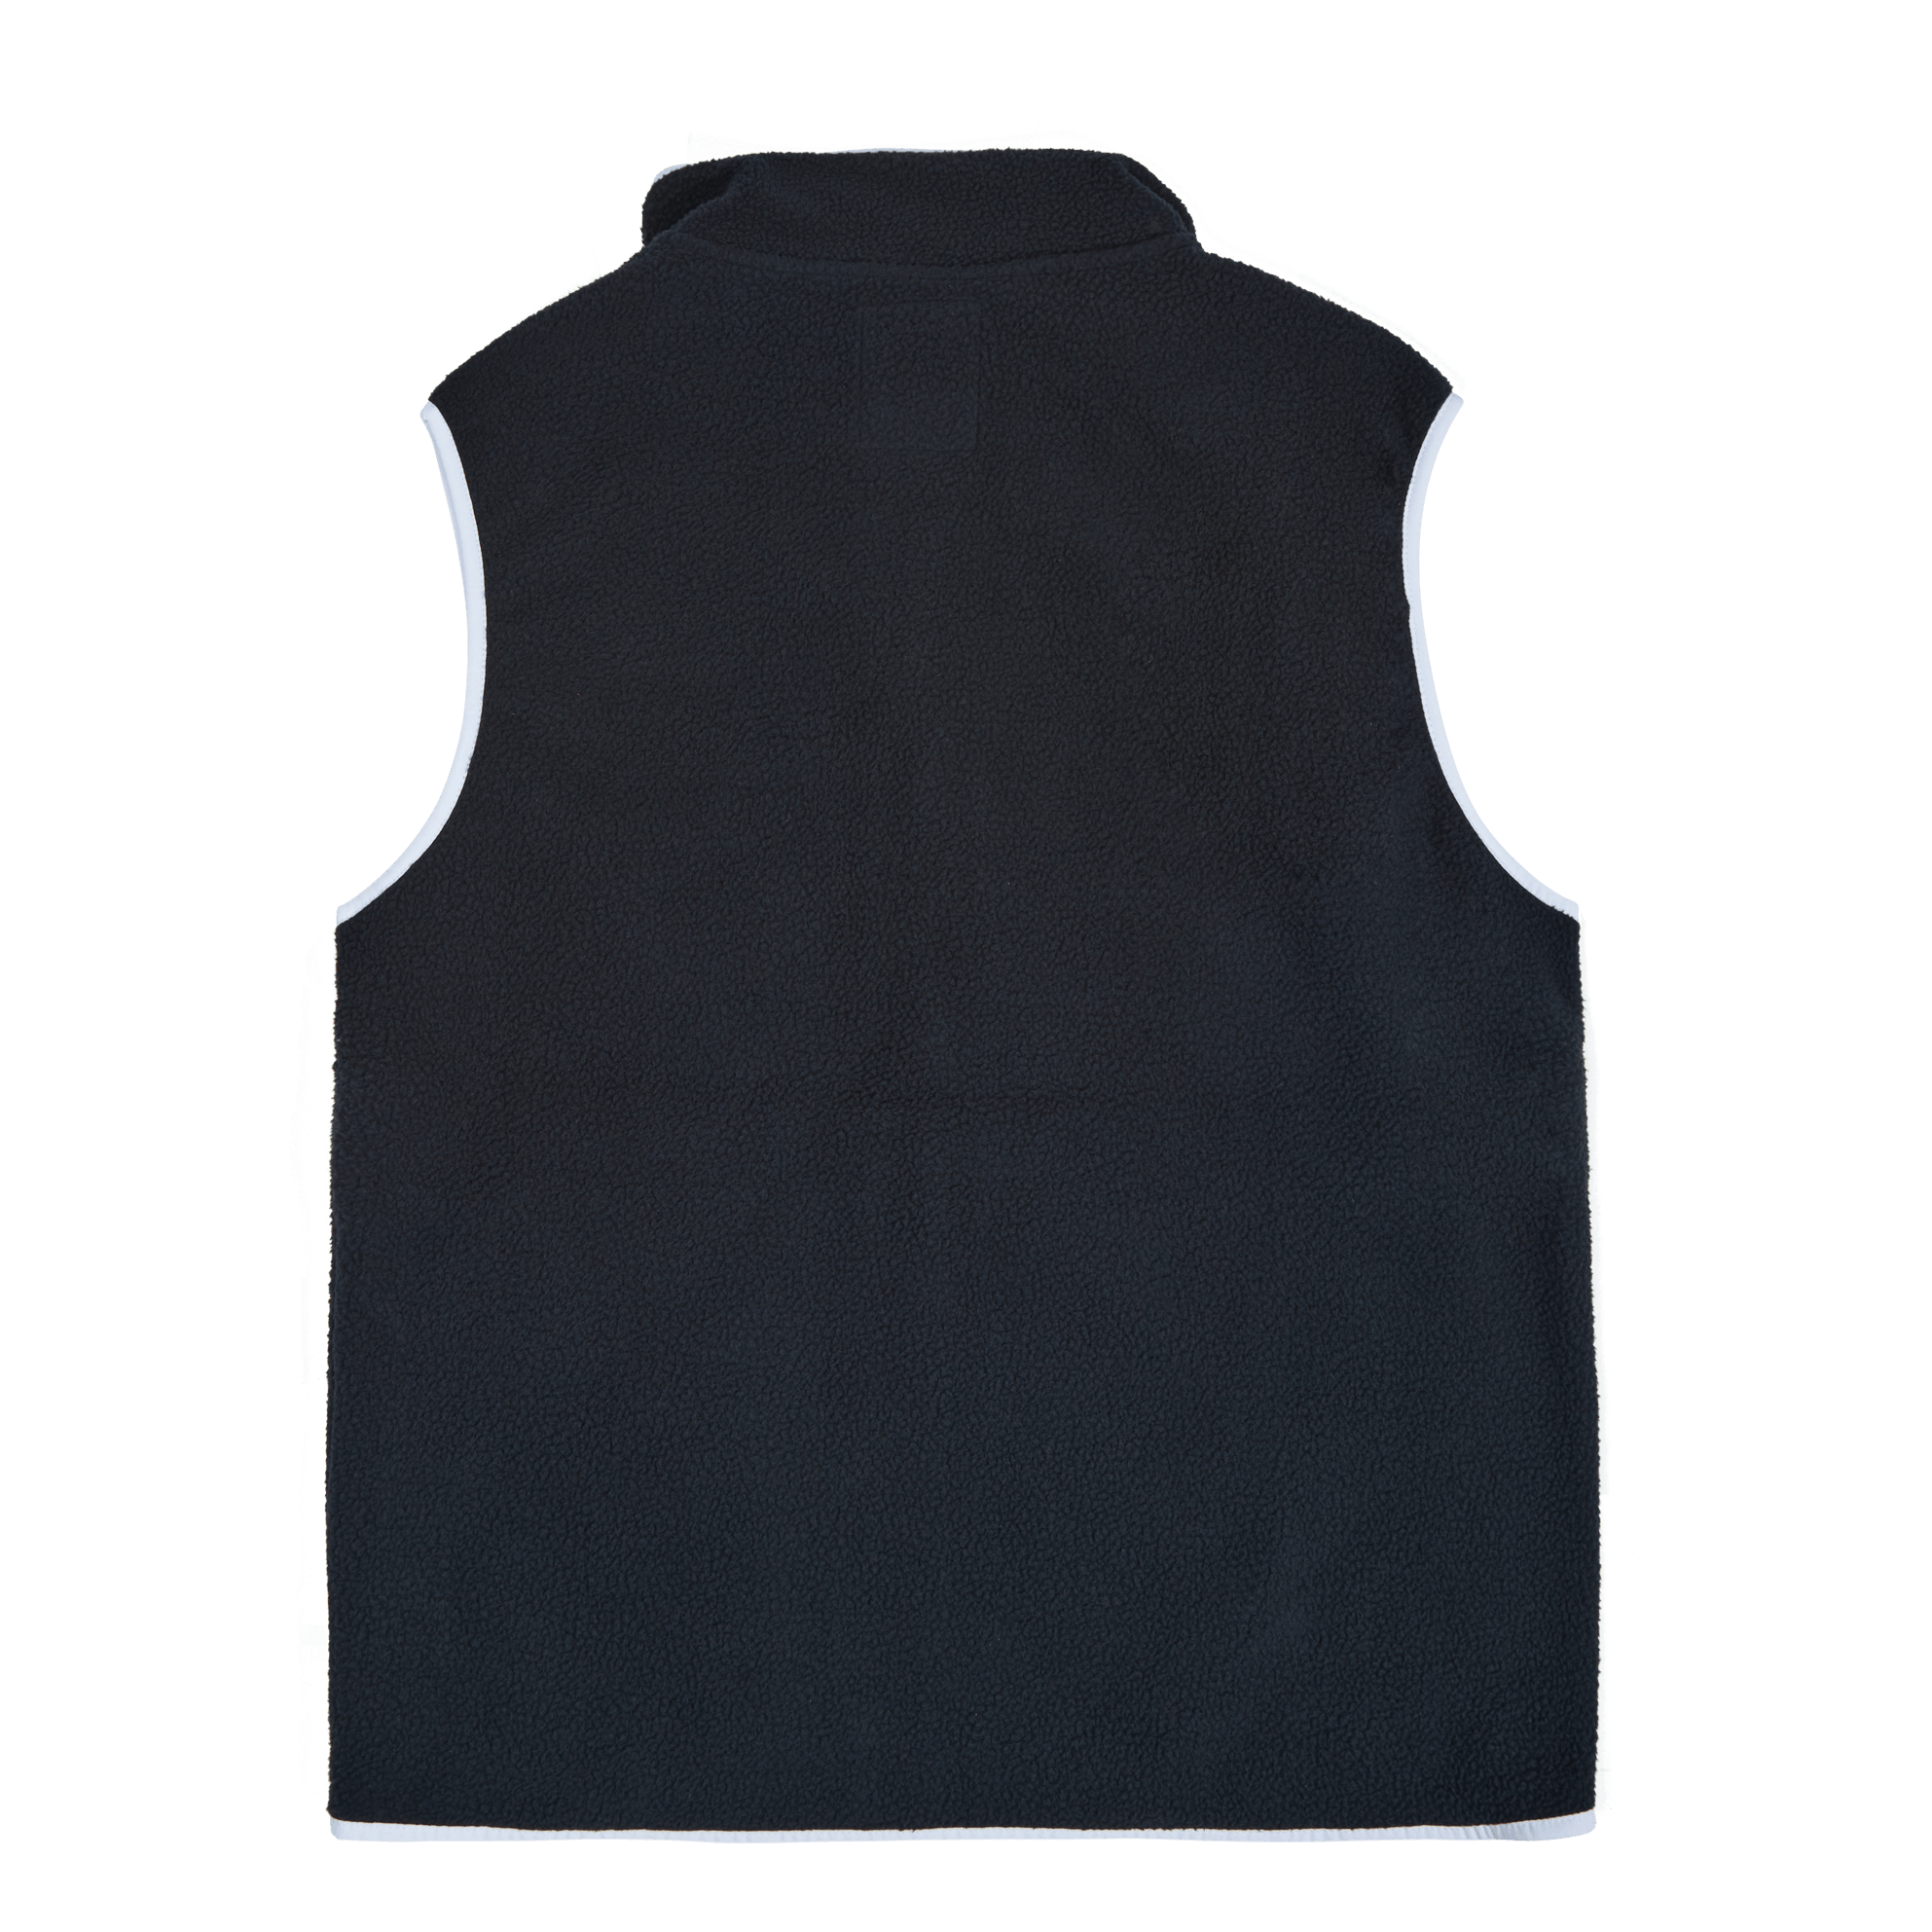 Helvetia™ Vest Black, City Gre